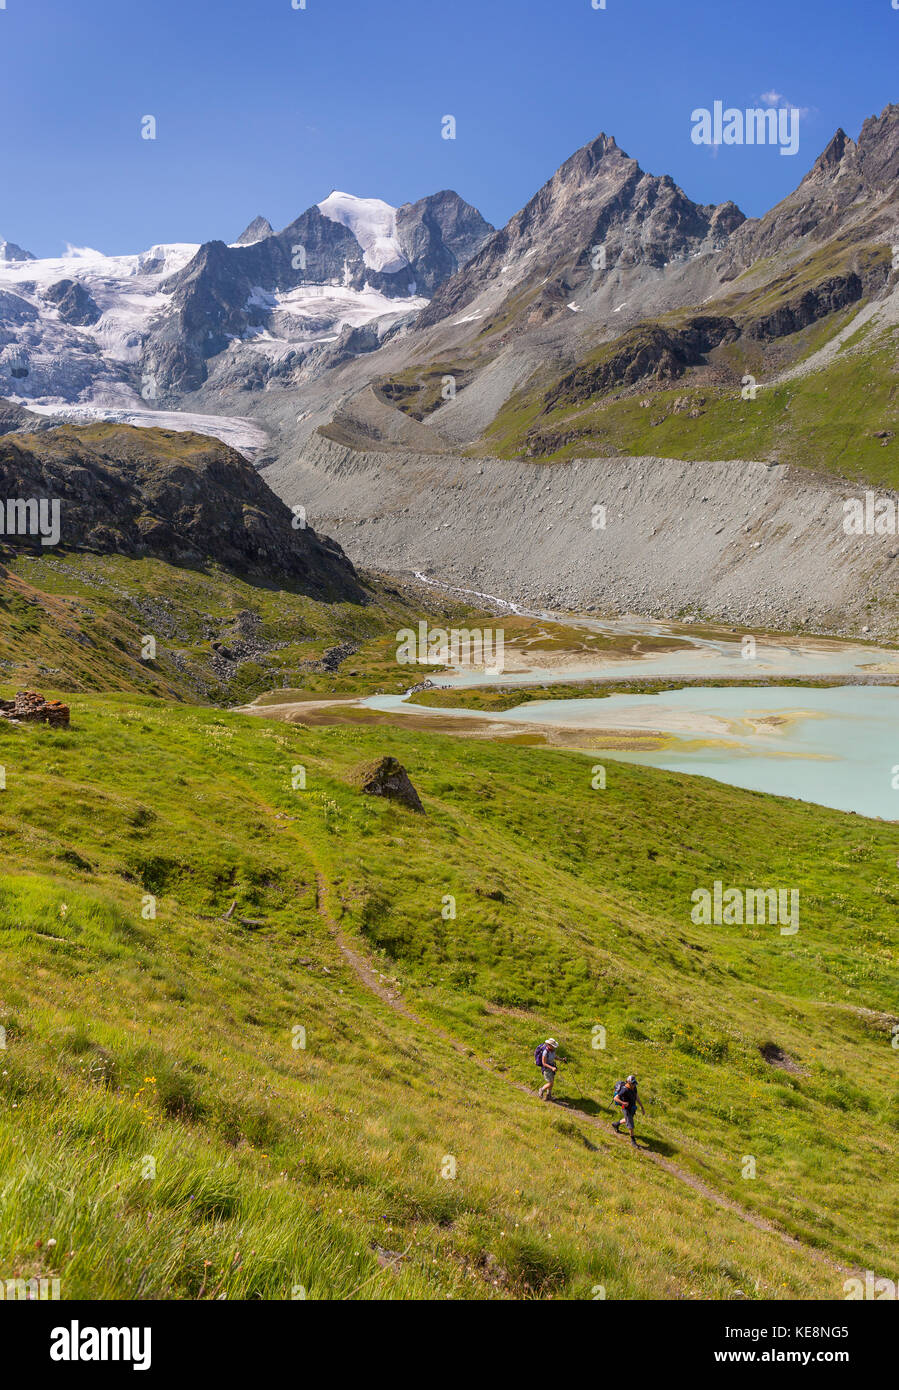 La vallée de Moiry, Suisse - les randonneurs sur le sentier du glacier de Moiry, paysage de montagne, dans les Alpes Pennines dans le canton du Valais. Banque D'Images